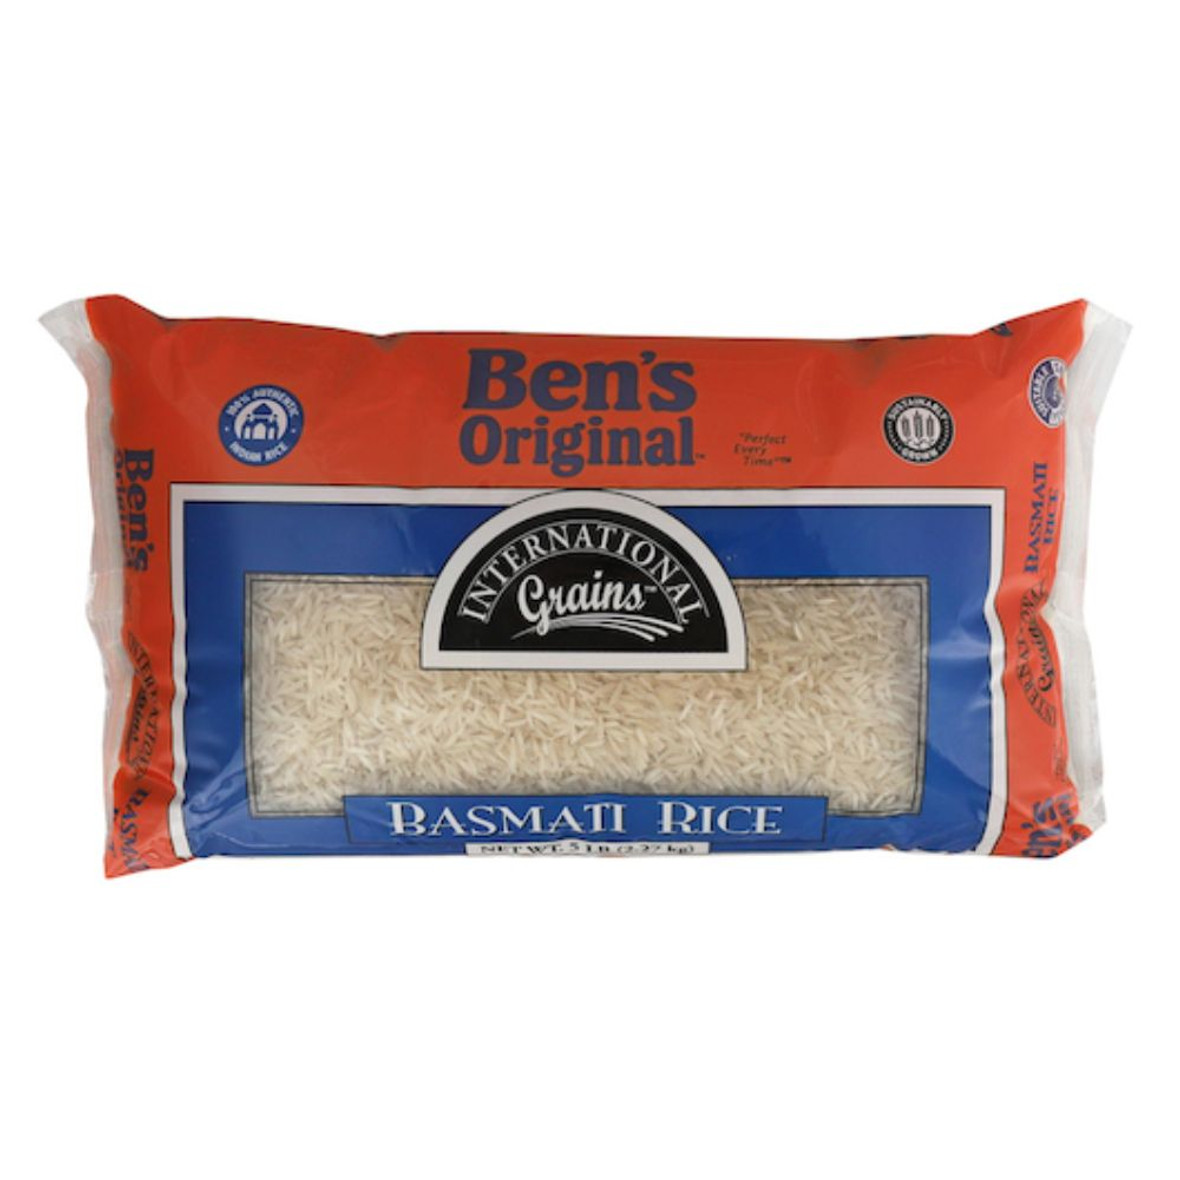 Ben's Original International Grains Basmati